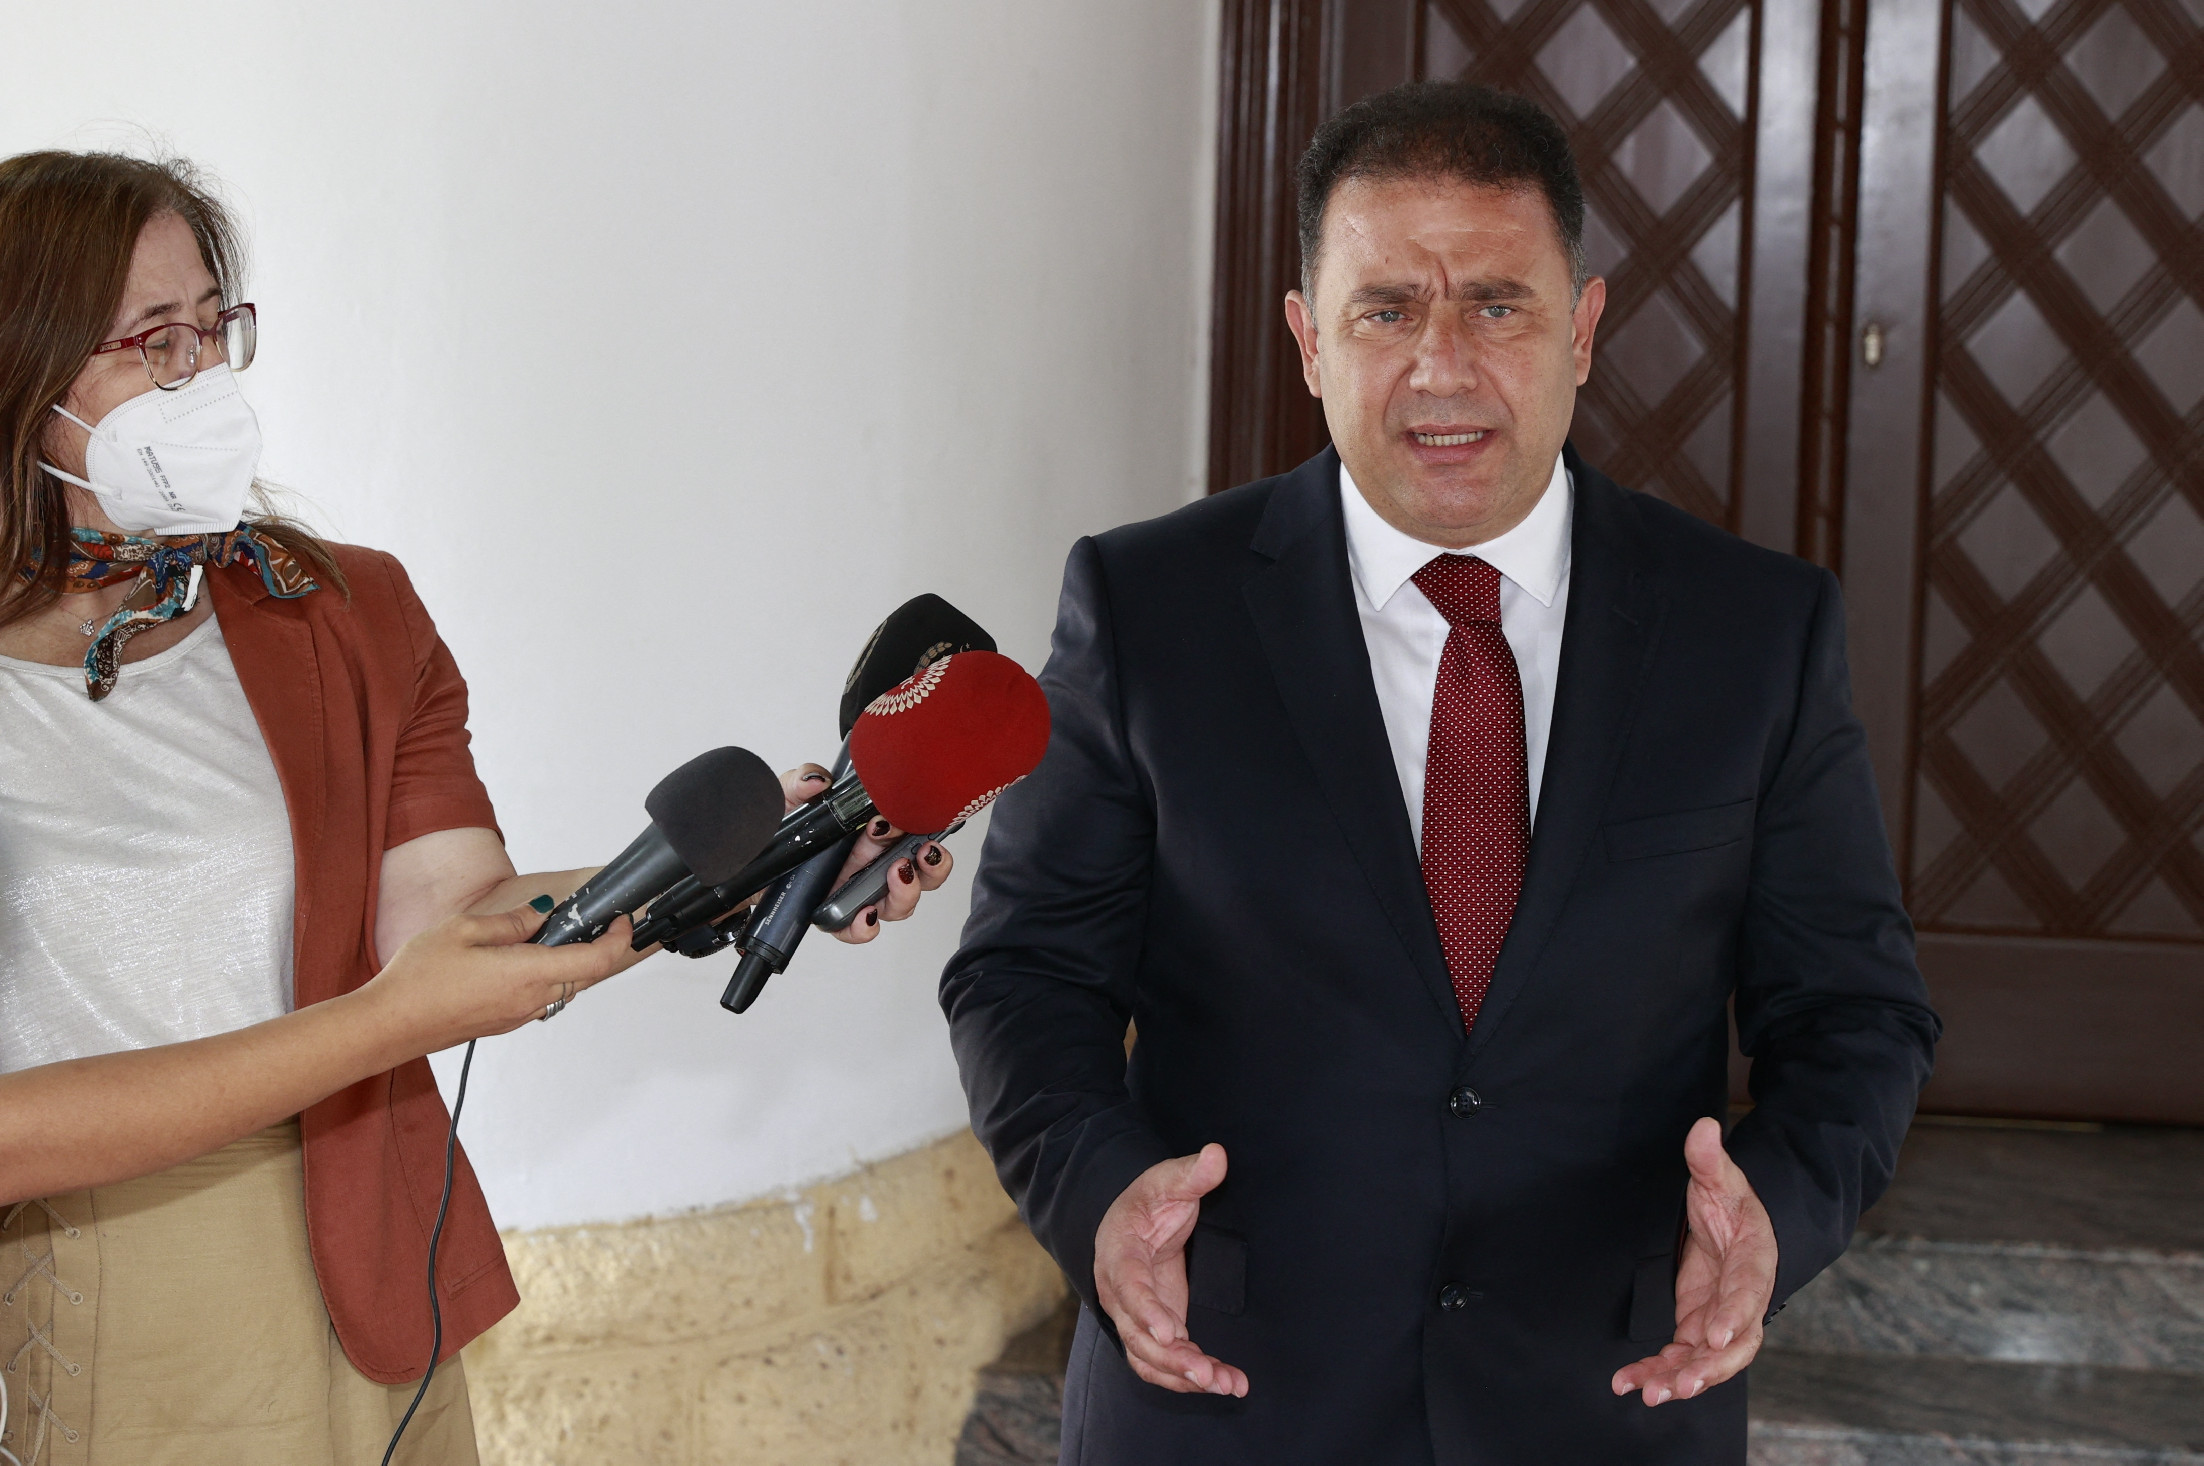 444: Szexvideó került elő Észak-Ciprus miniszterelnökéről